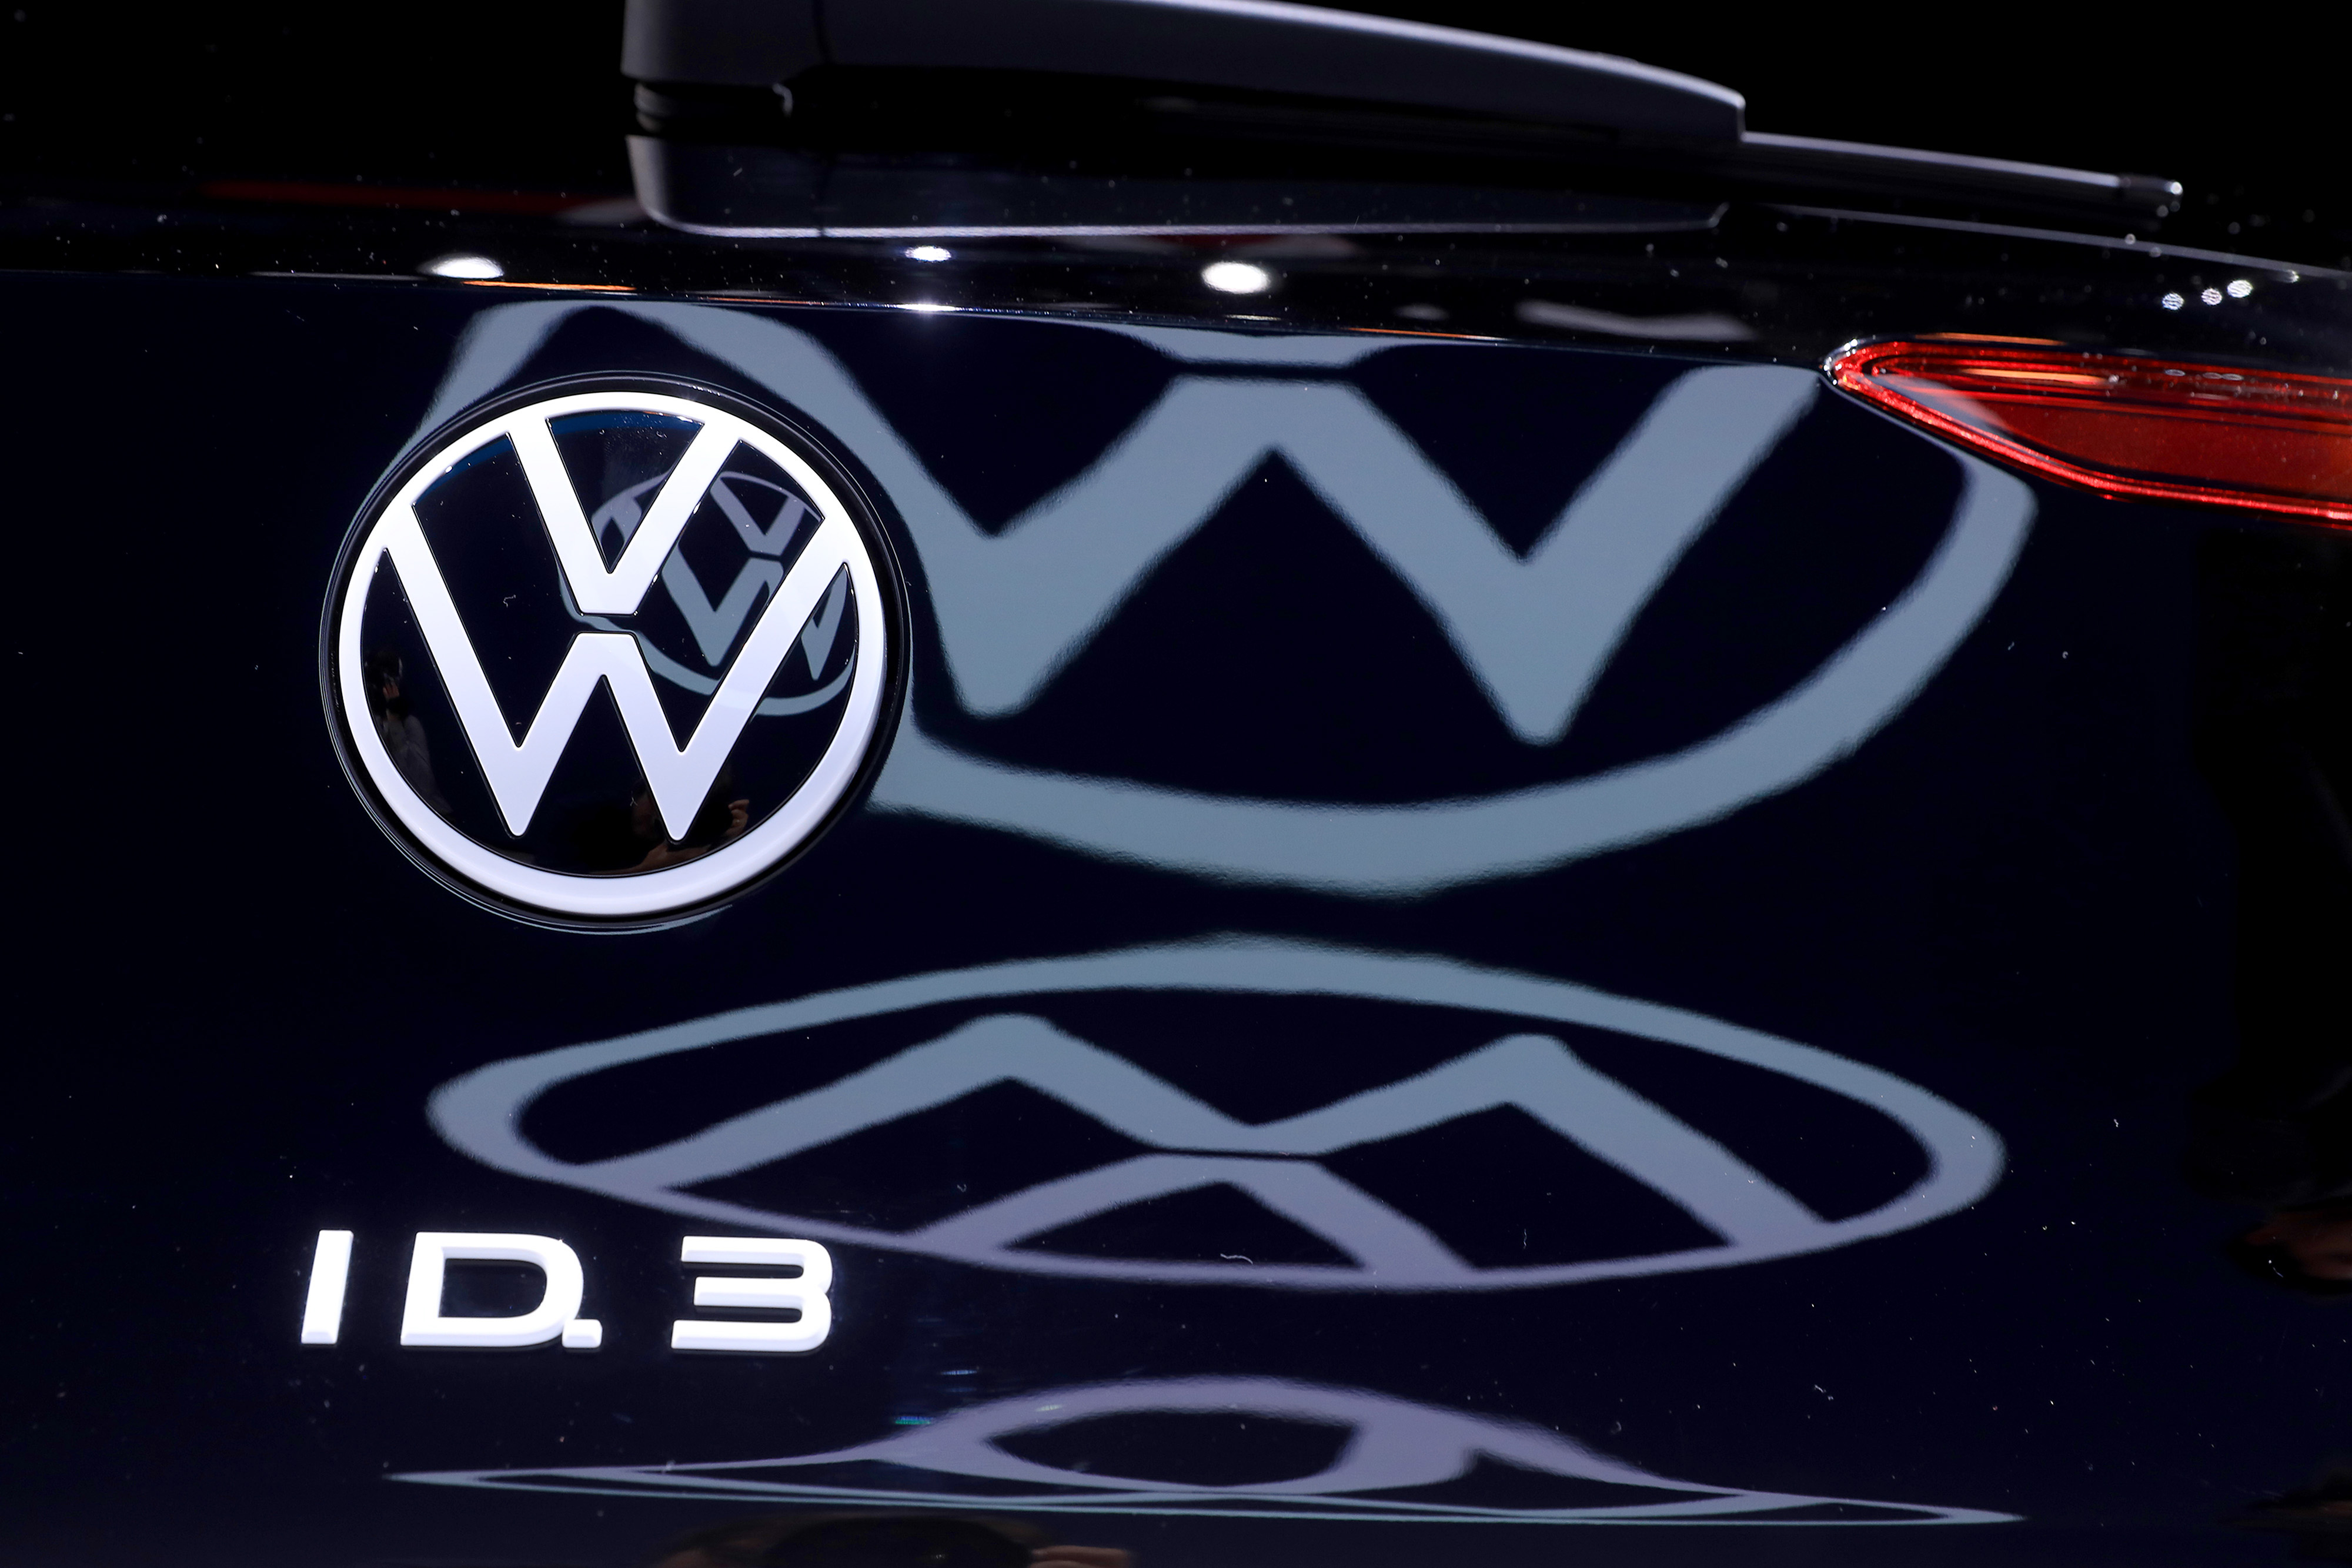 NEWSROOM: A new look for the iconic Volkswagen logo - Volkswagen